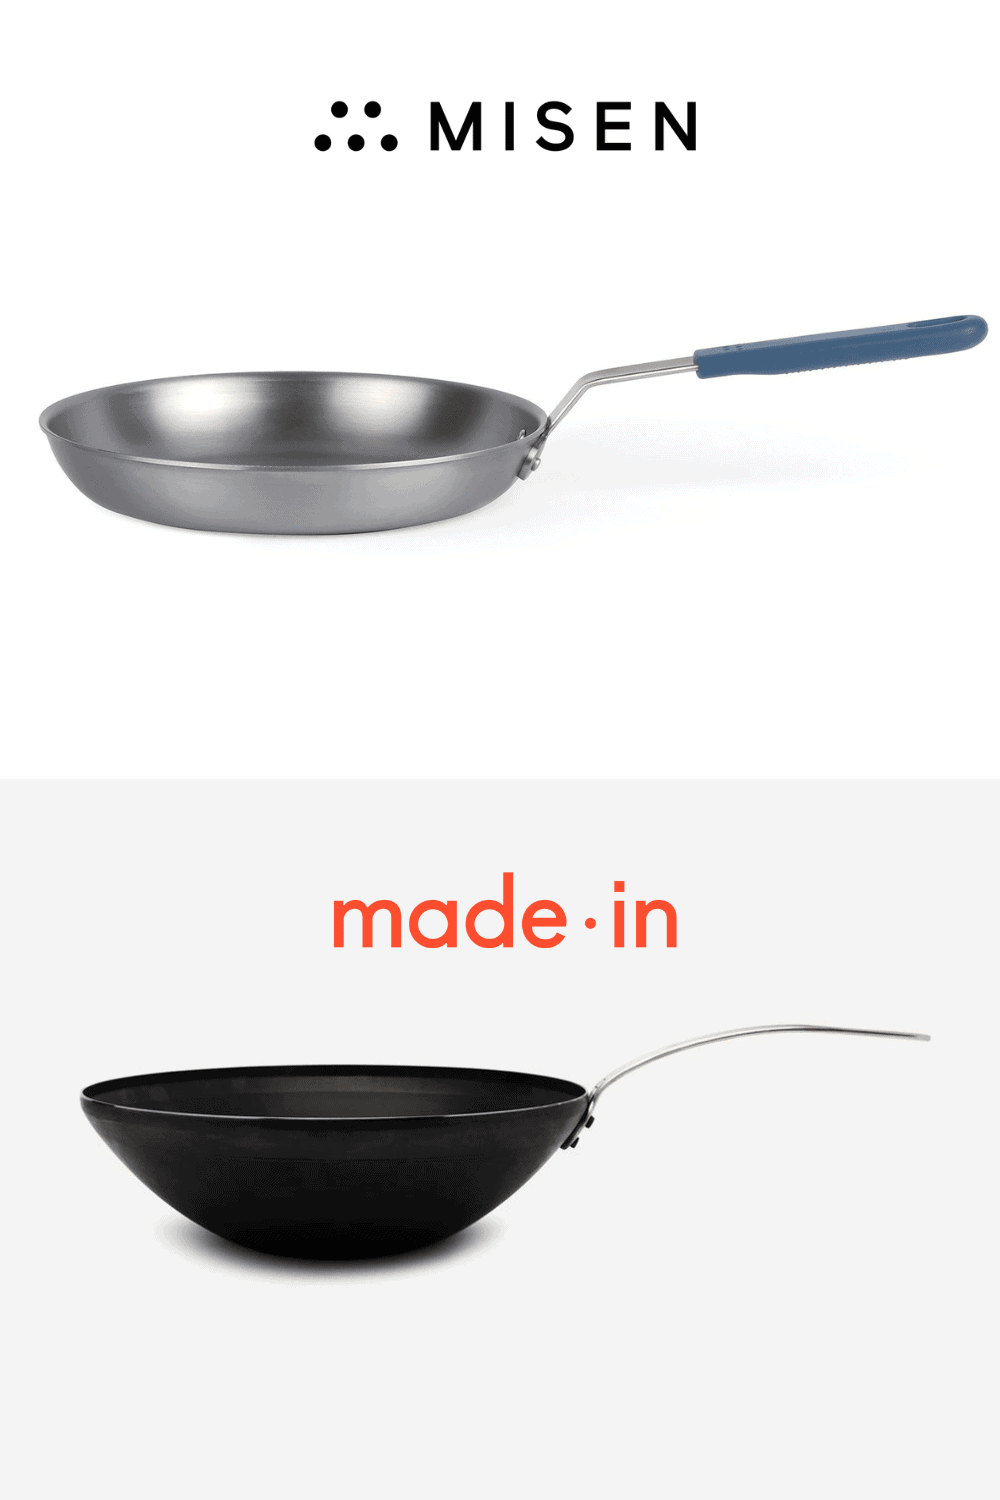 made in vs. misen